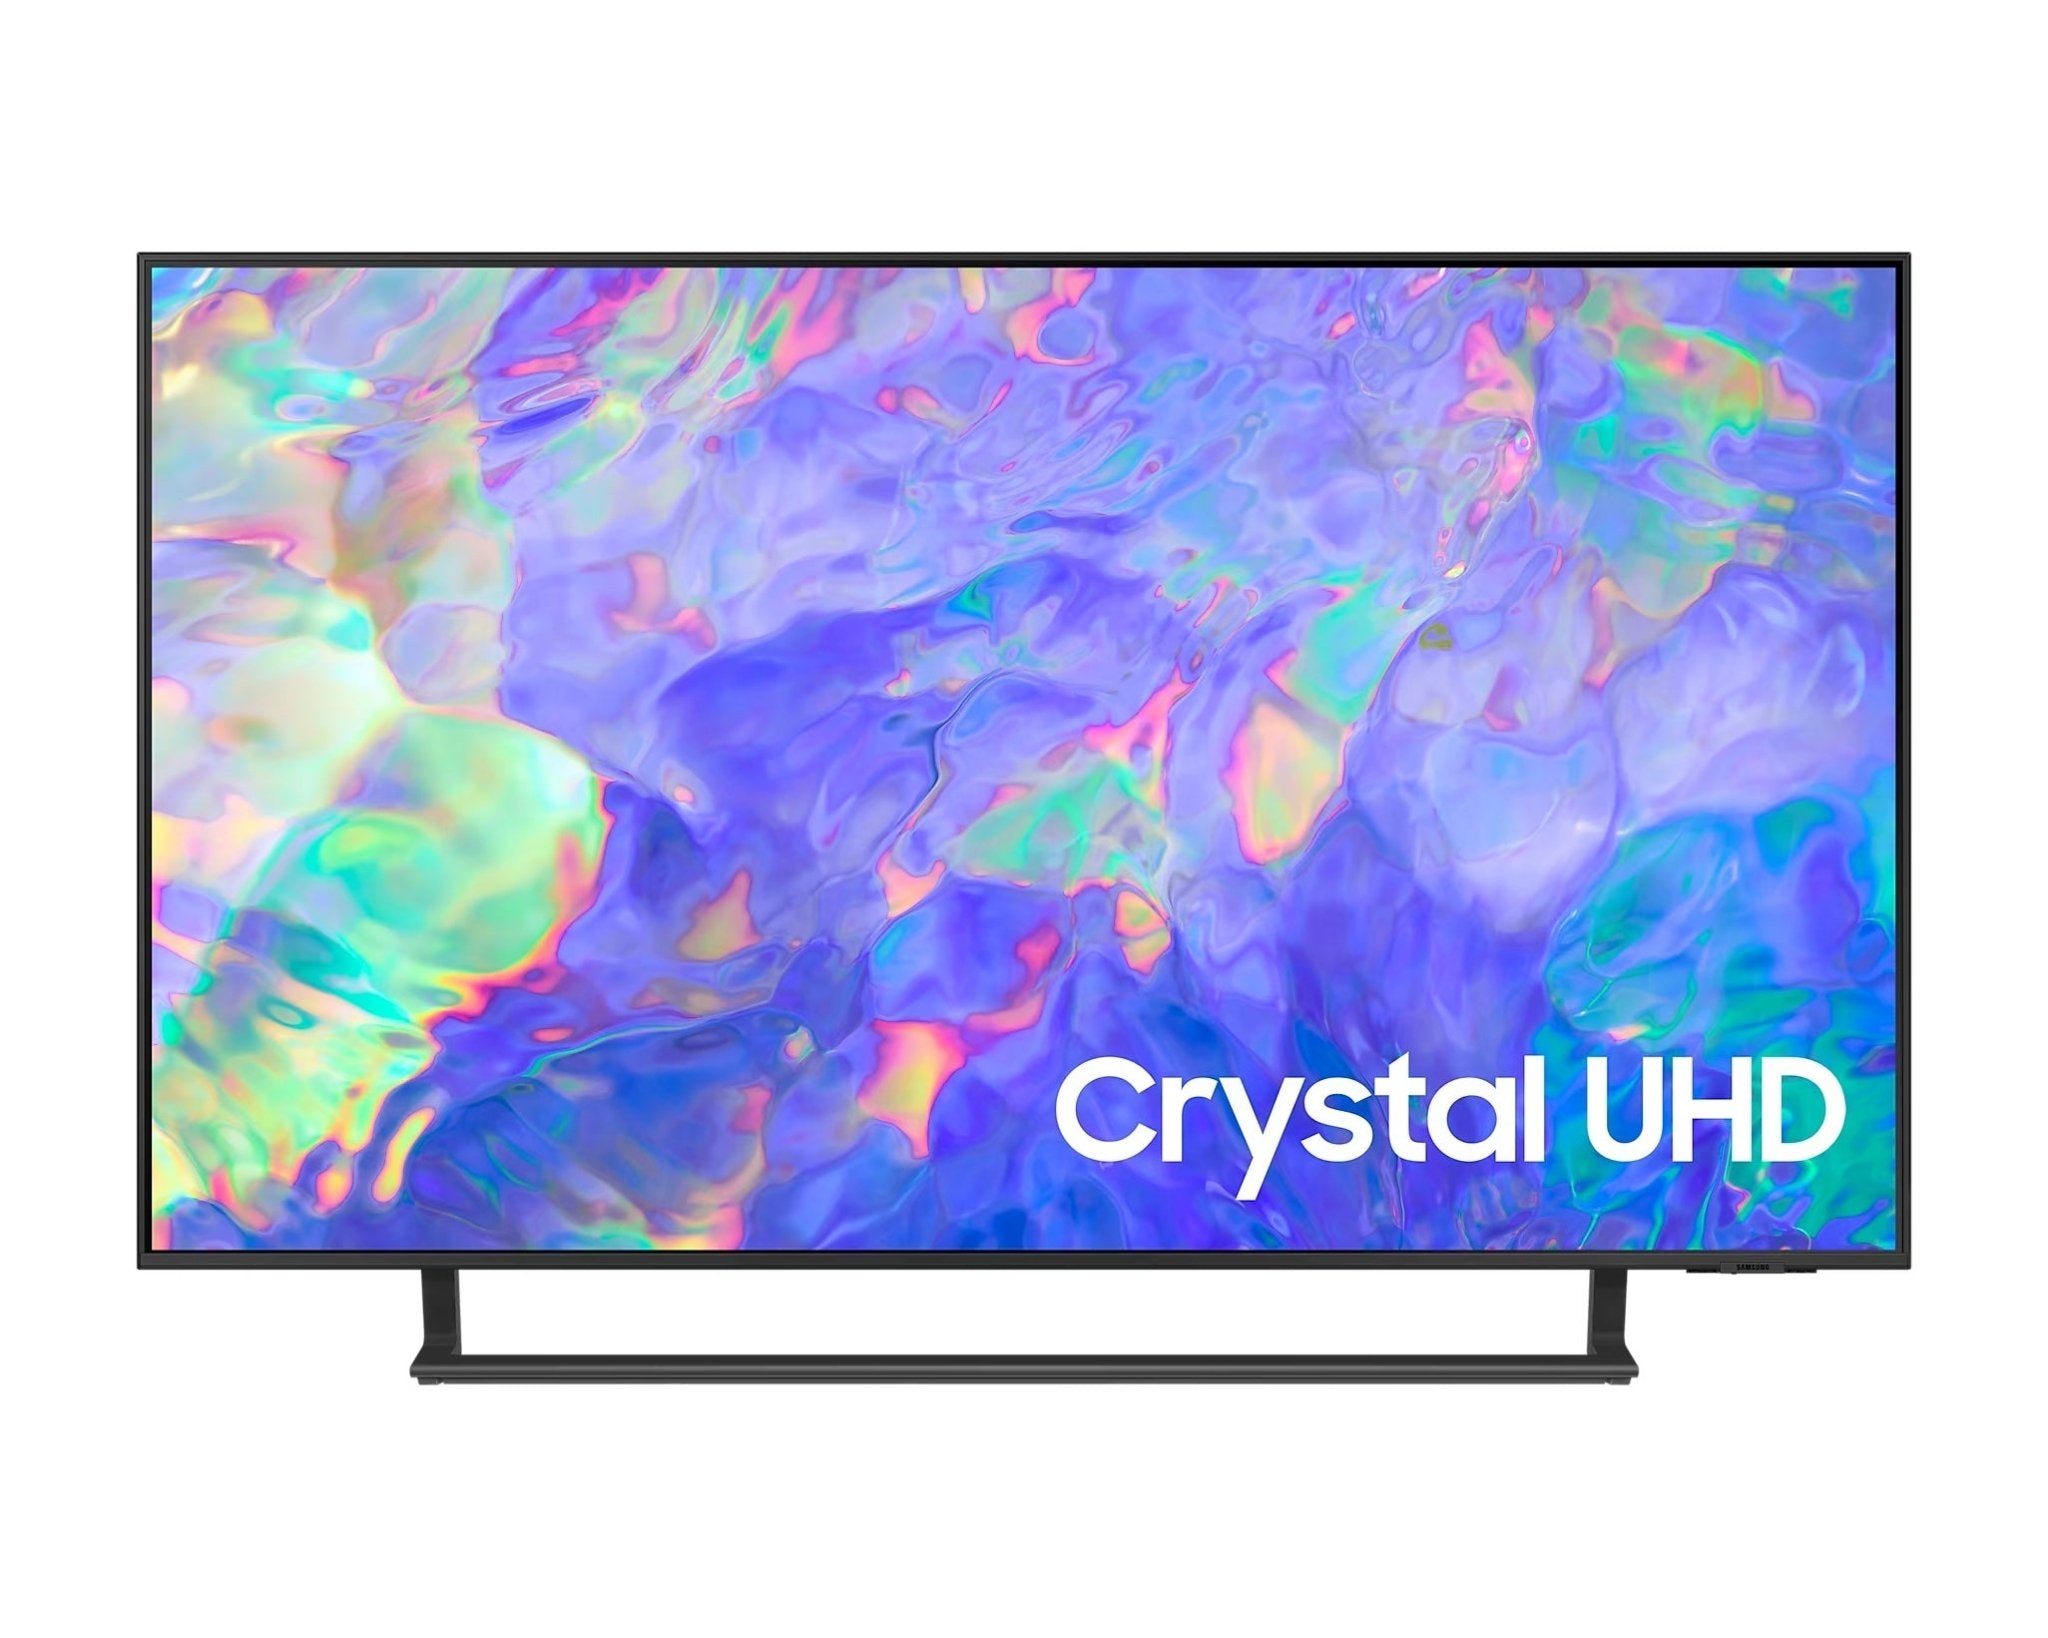 Samsung 三星 CU8500 系列 Crystal UHD 4K 電視 - Fever Electrics 電器熱網購平台